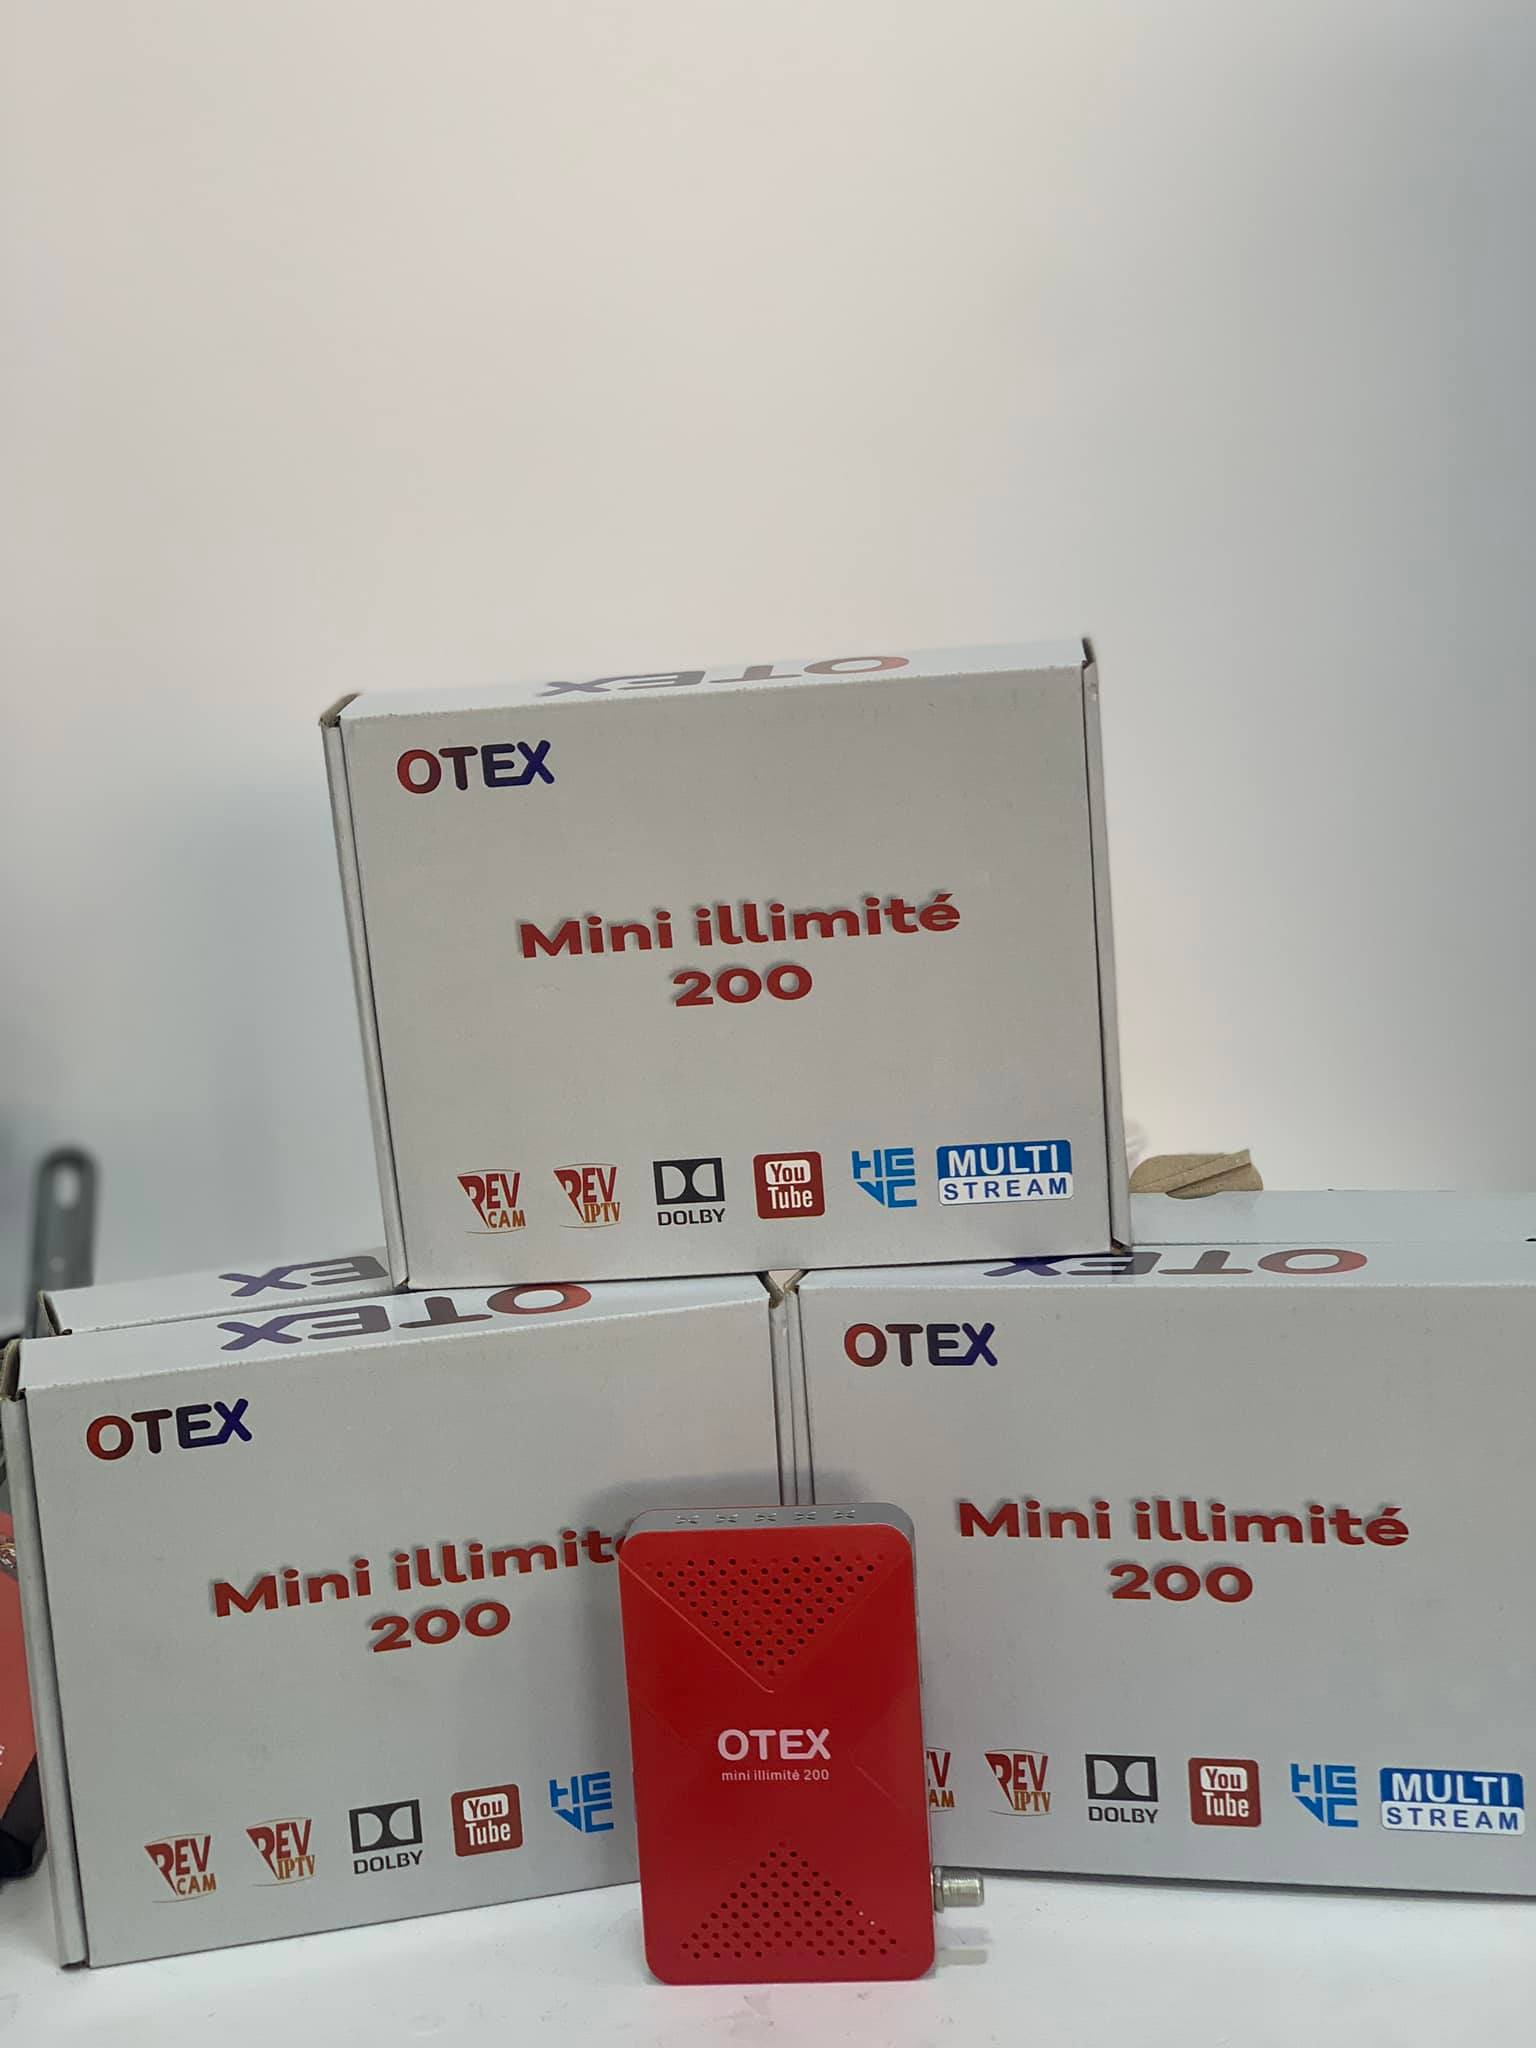 رسميا دخول الجهاز الجديد لعائلة OTEX_DZ السوق الجزائرية بتاريخ 2022/05/10 296747529